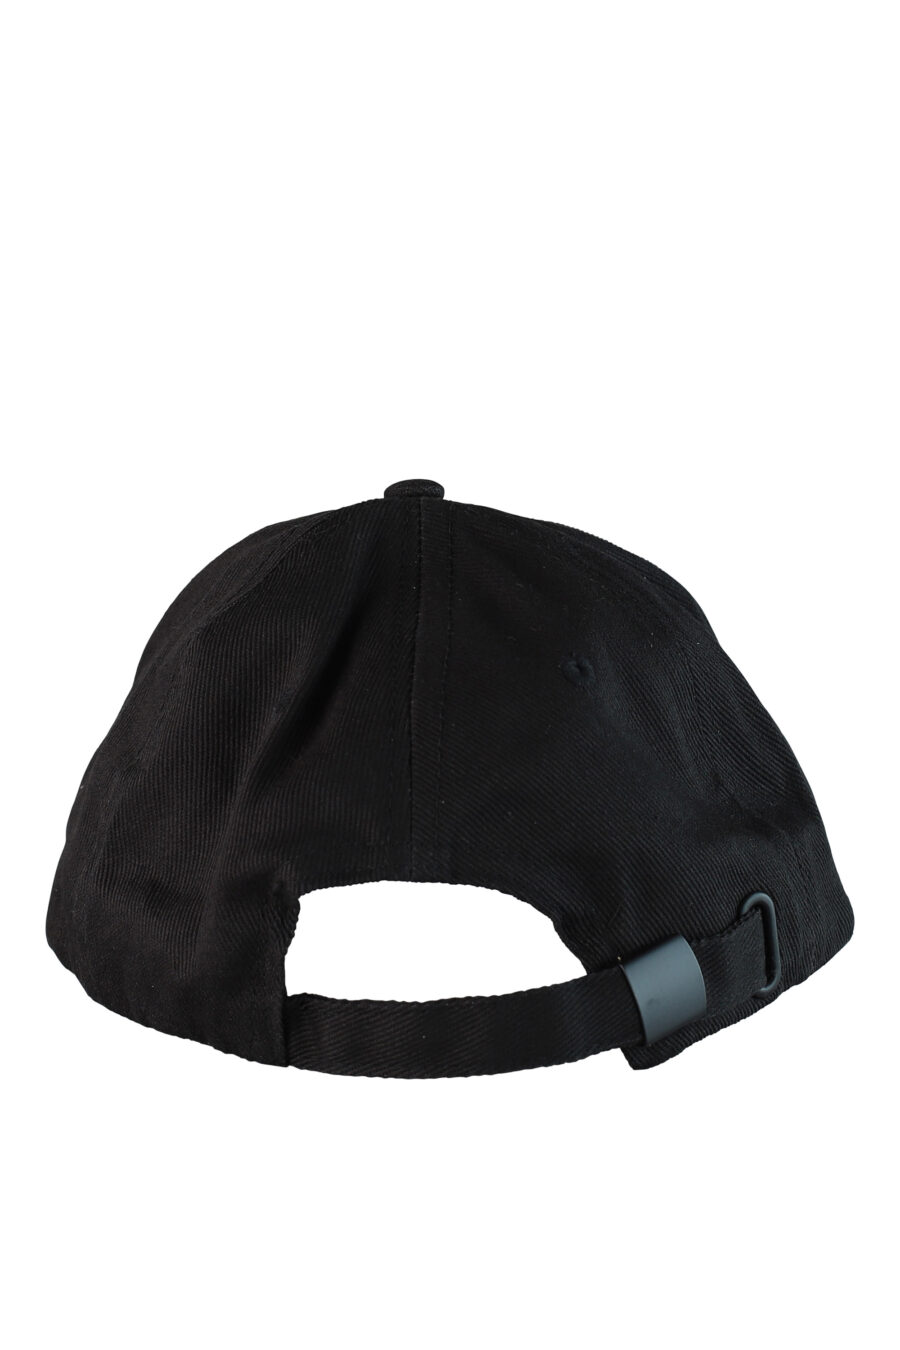 Gorra negra con logo circular blanco - IMG 0509